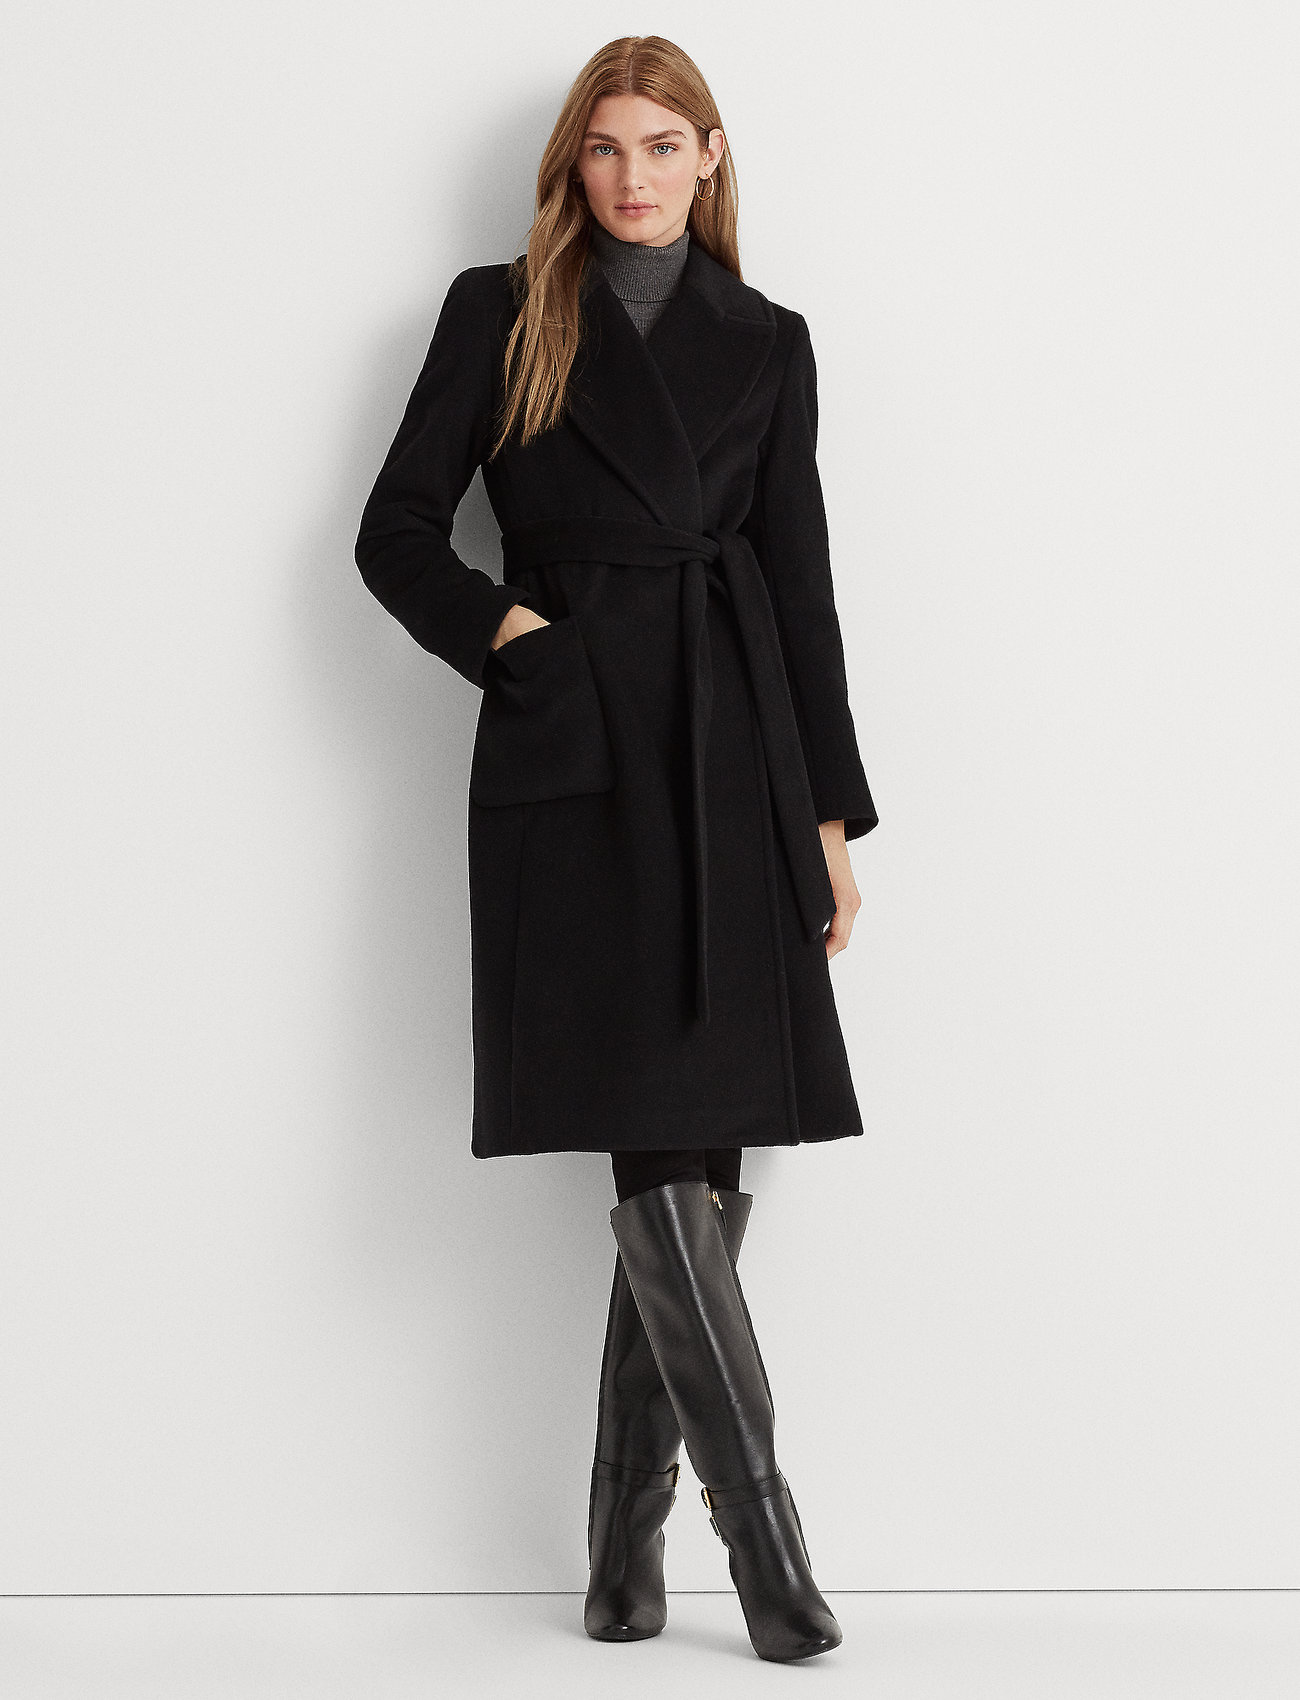 Lauren Ralph Lauren Wool-blend Wrap Coat - 419 €. Buy Winter Coats from Lauren  Ralph Lauren online at . Fast delivery and easy returns